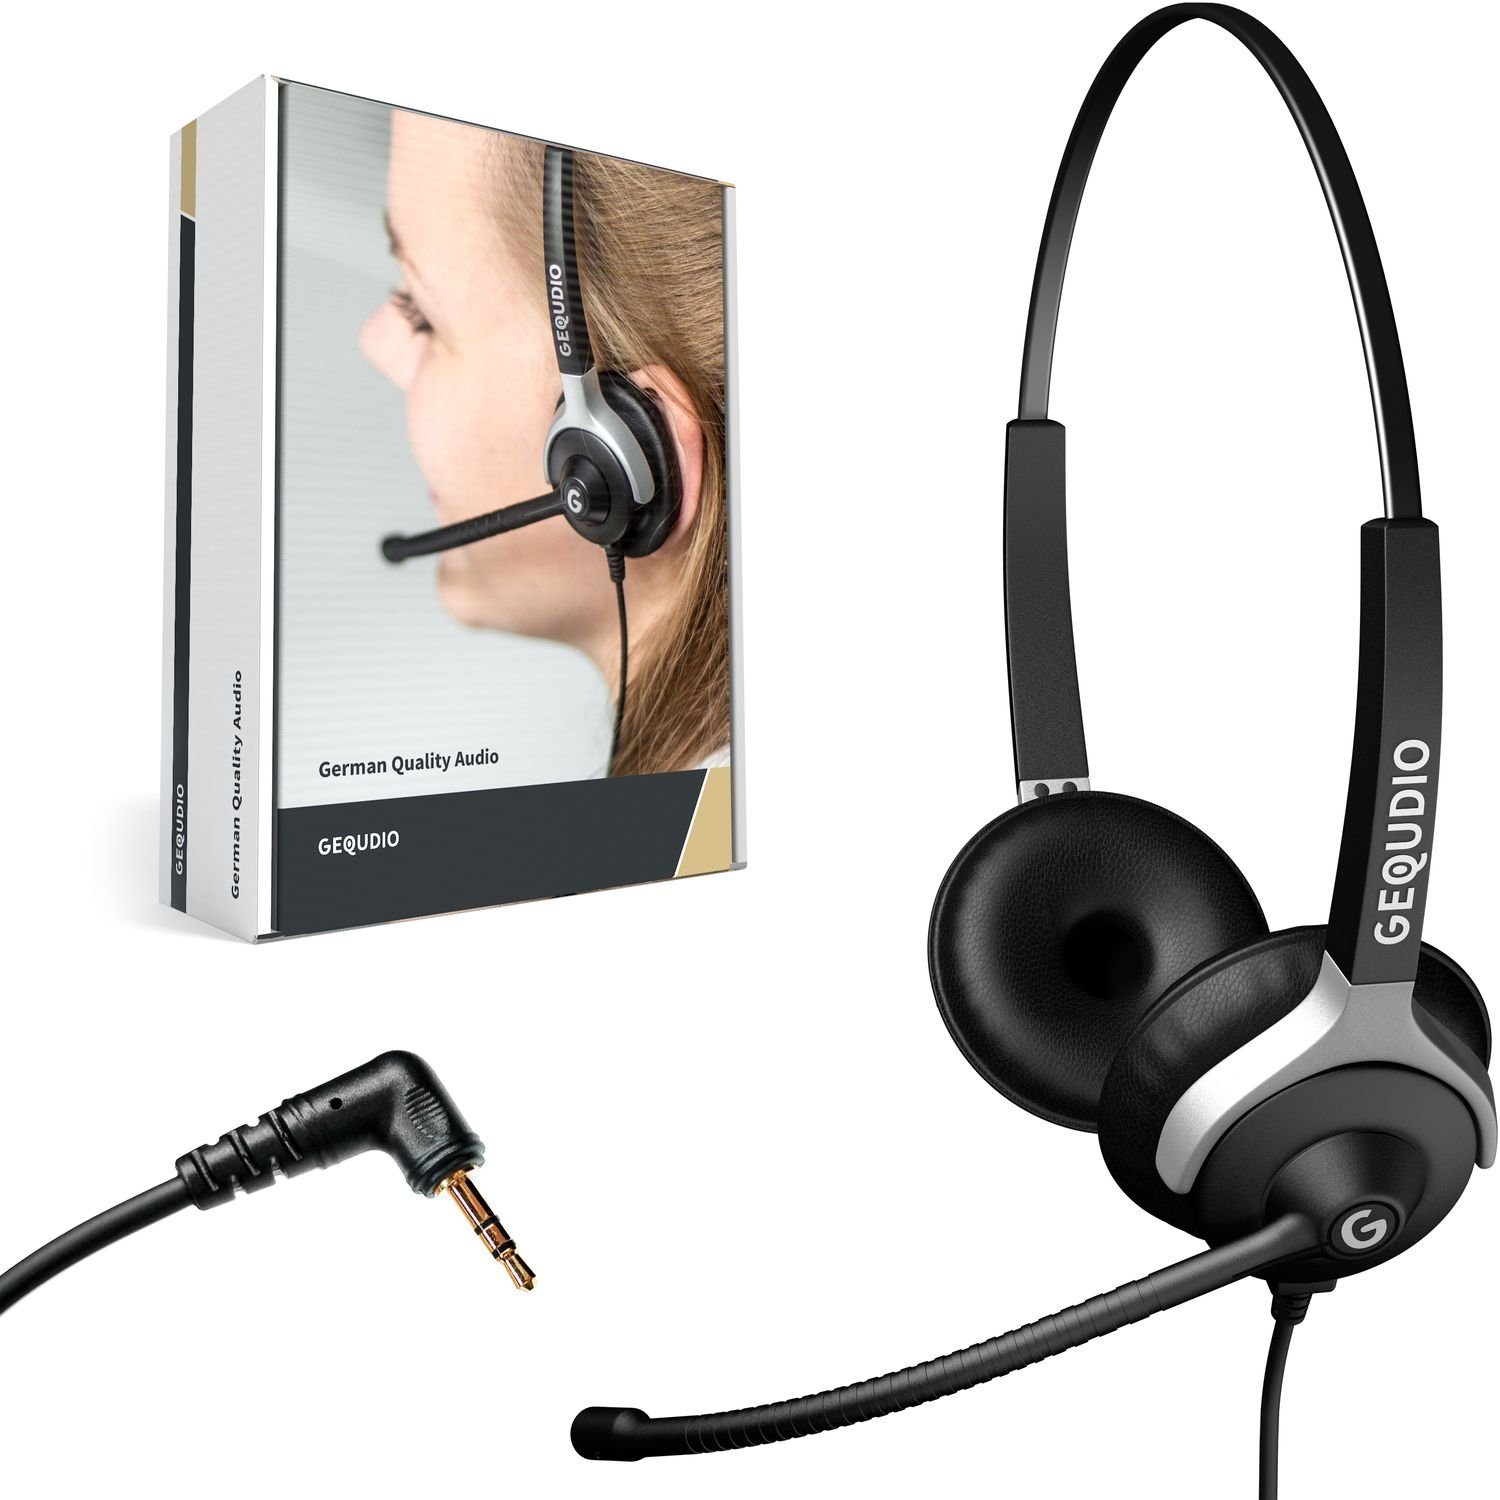 GEQUDIO für Gigaset, Panasonic, Grandstream, Polycom Telefone mit 2,5mm Klinke Headset (2-Ohr-Headset, 80g leicht, Bügel aus Federstahl, mit Wechselverschluss für mehrere Endgeräte, inklusive Anschlusskabel)